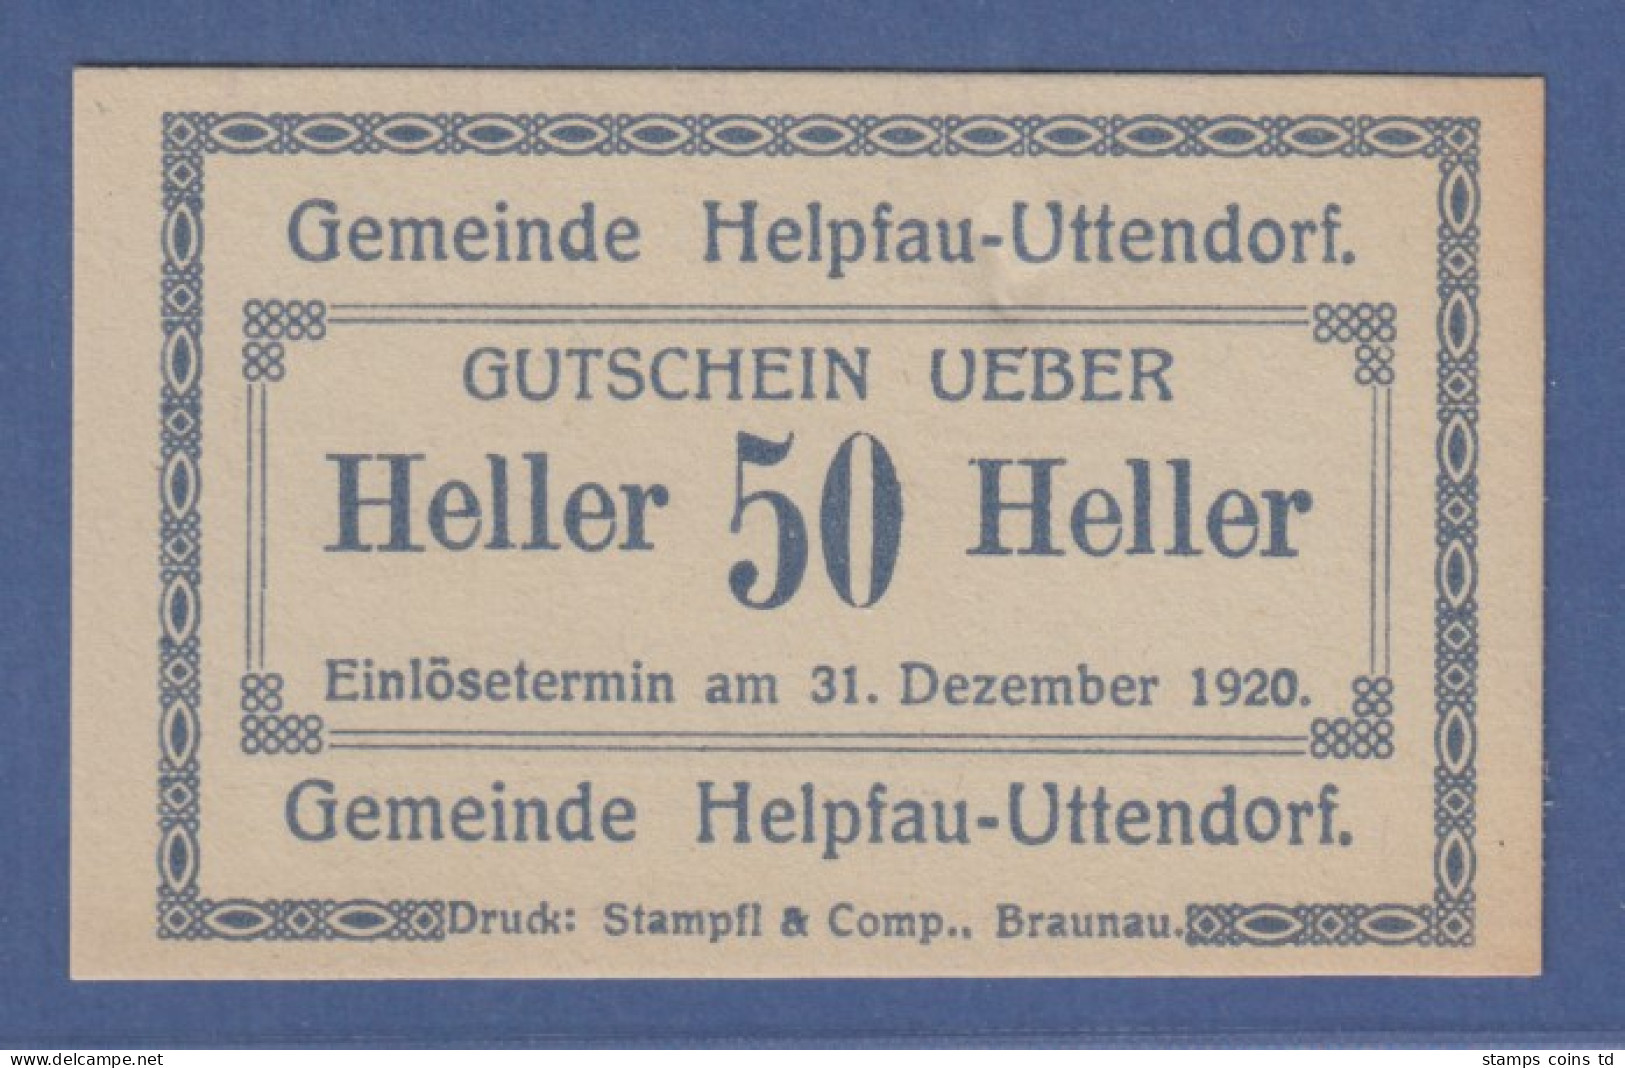 Banknote Österreich Gutschein über 50 Heller Gemeinde Helpfau-Uttendorf, 1920 - Oostenrijk